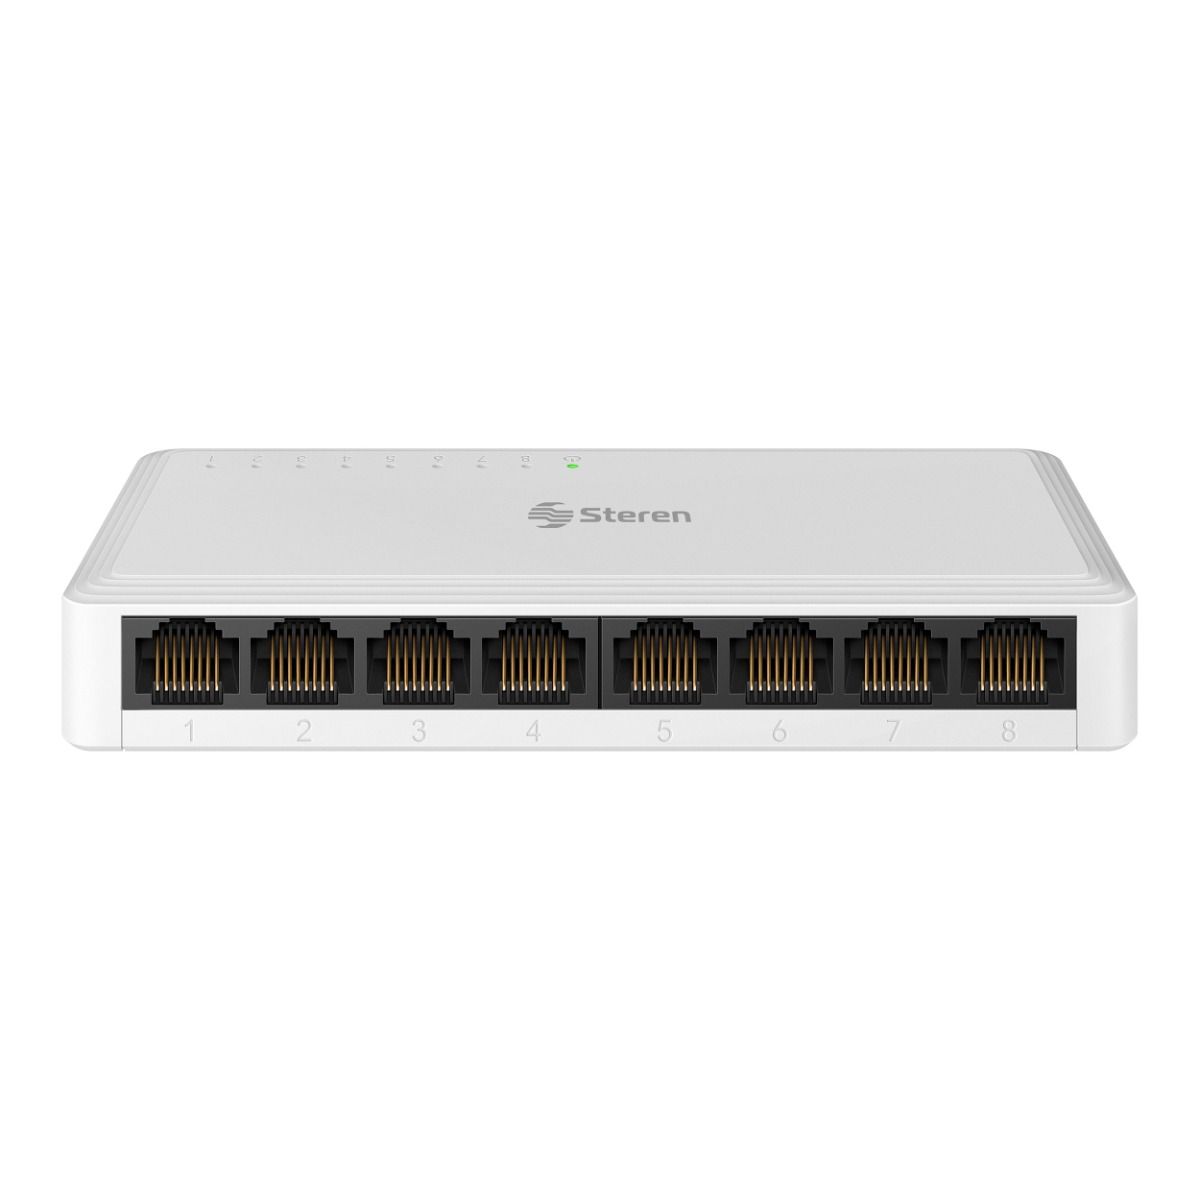 Comprar Ladron conmutador HDMI de 3 puertos - 3 port switch